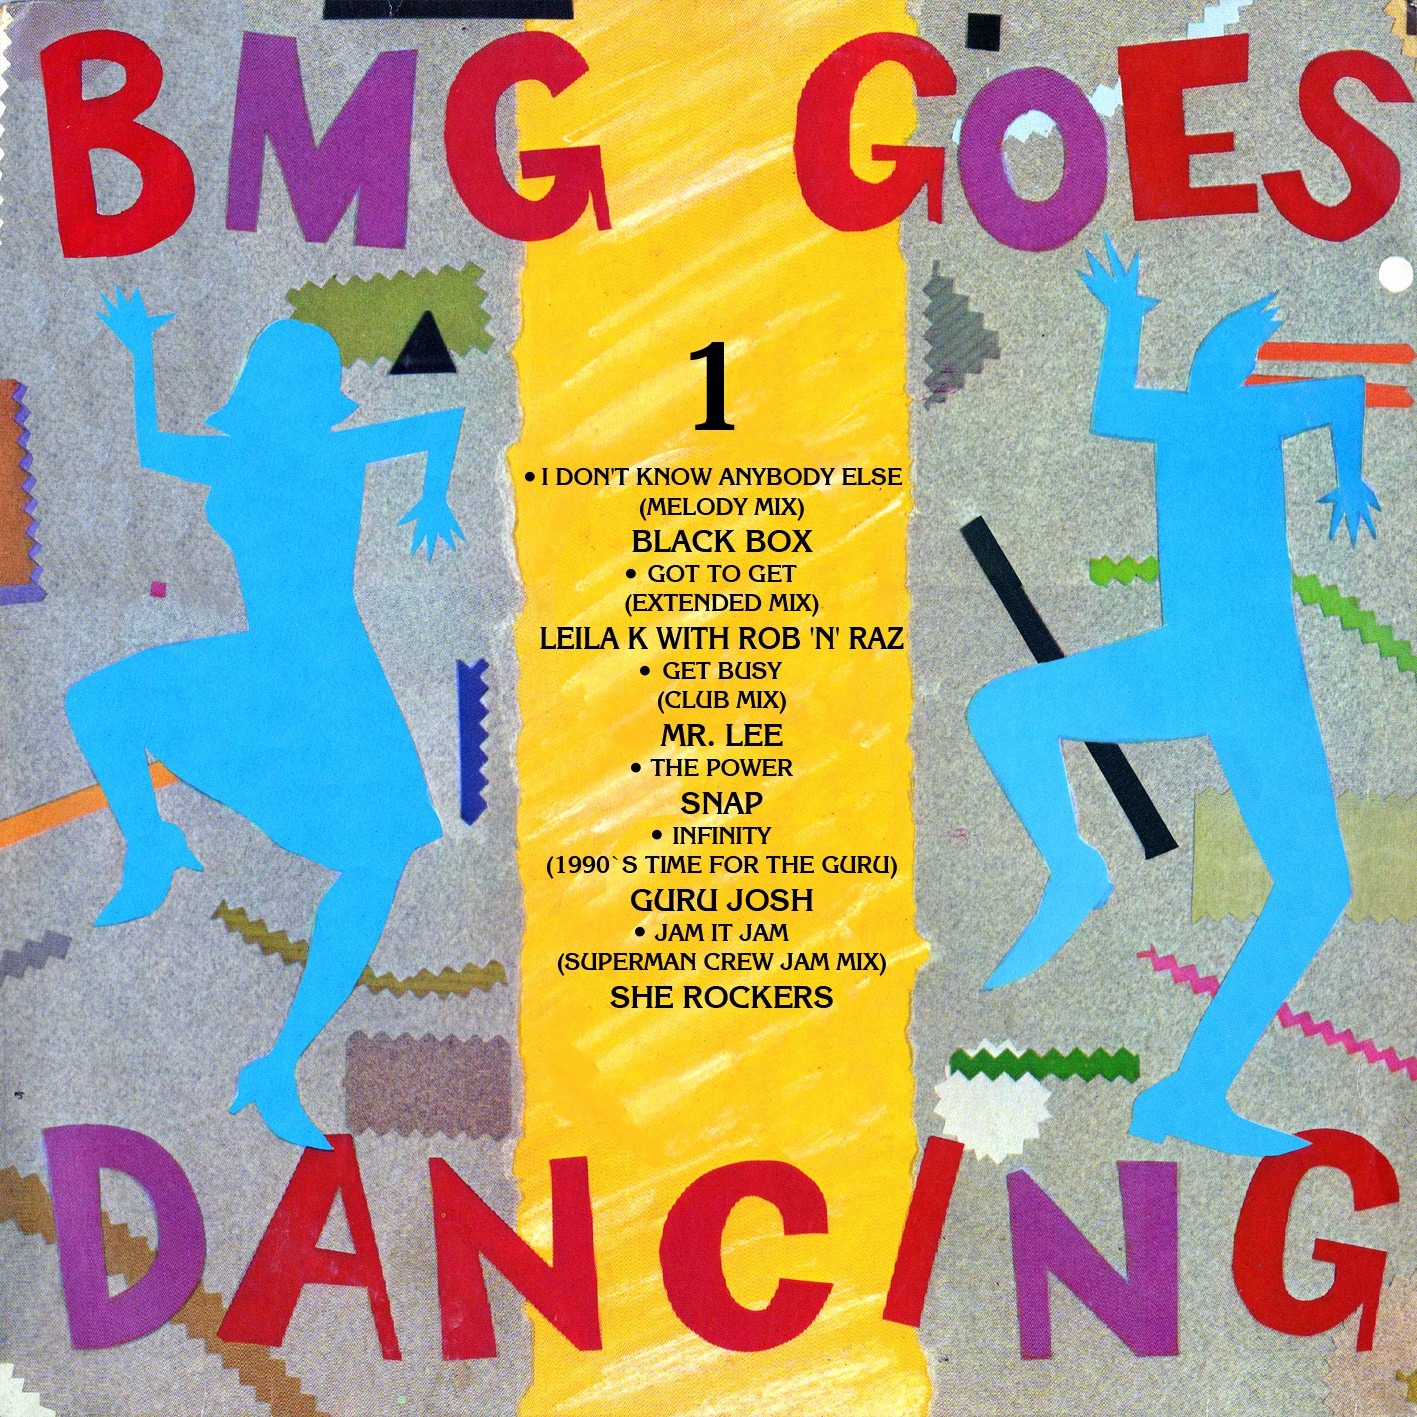 Dance английская песня. BMG Label. Go Dancing перевод. Mad for Dancin 28.